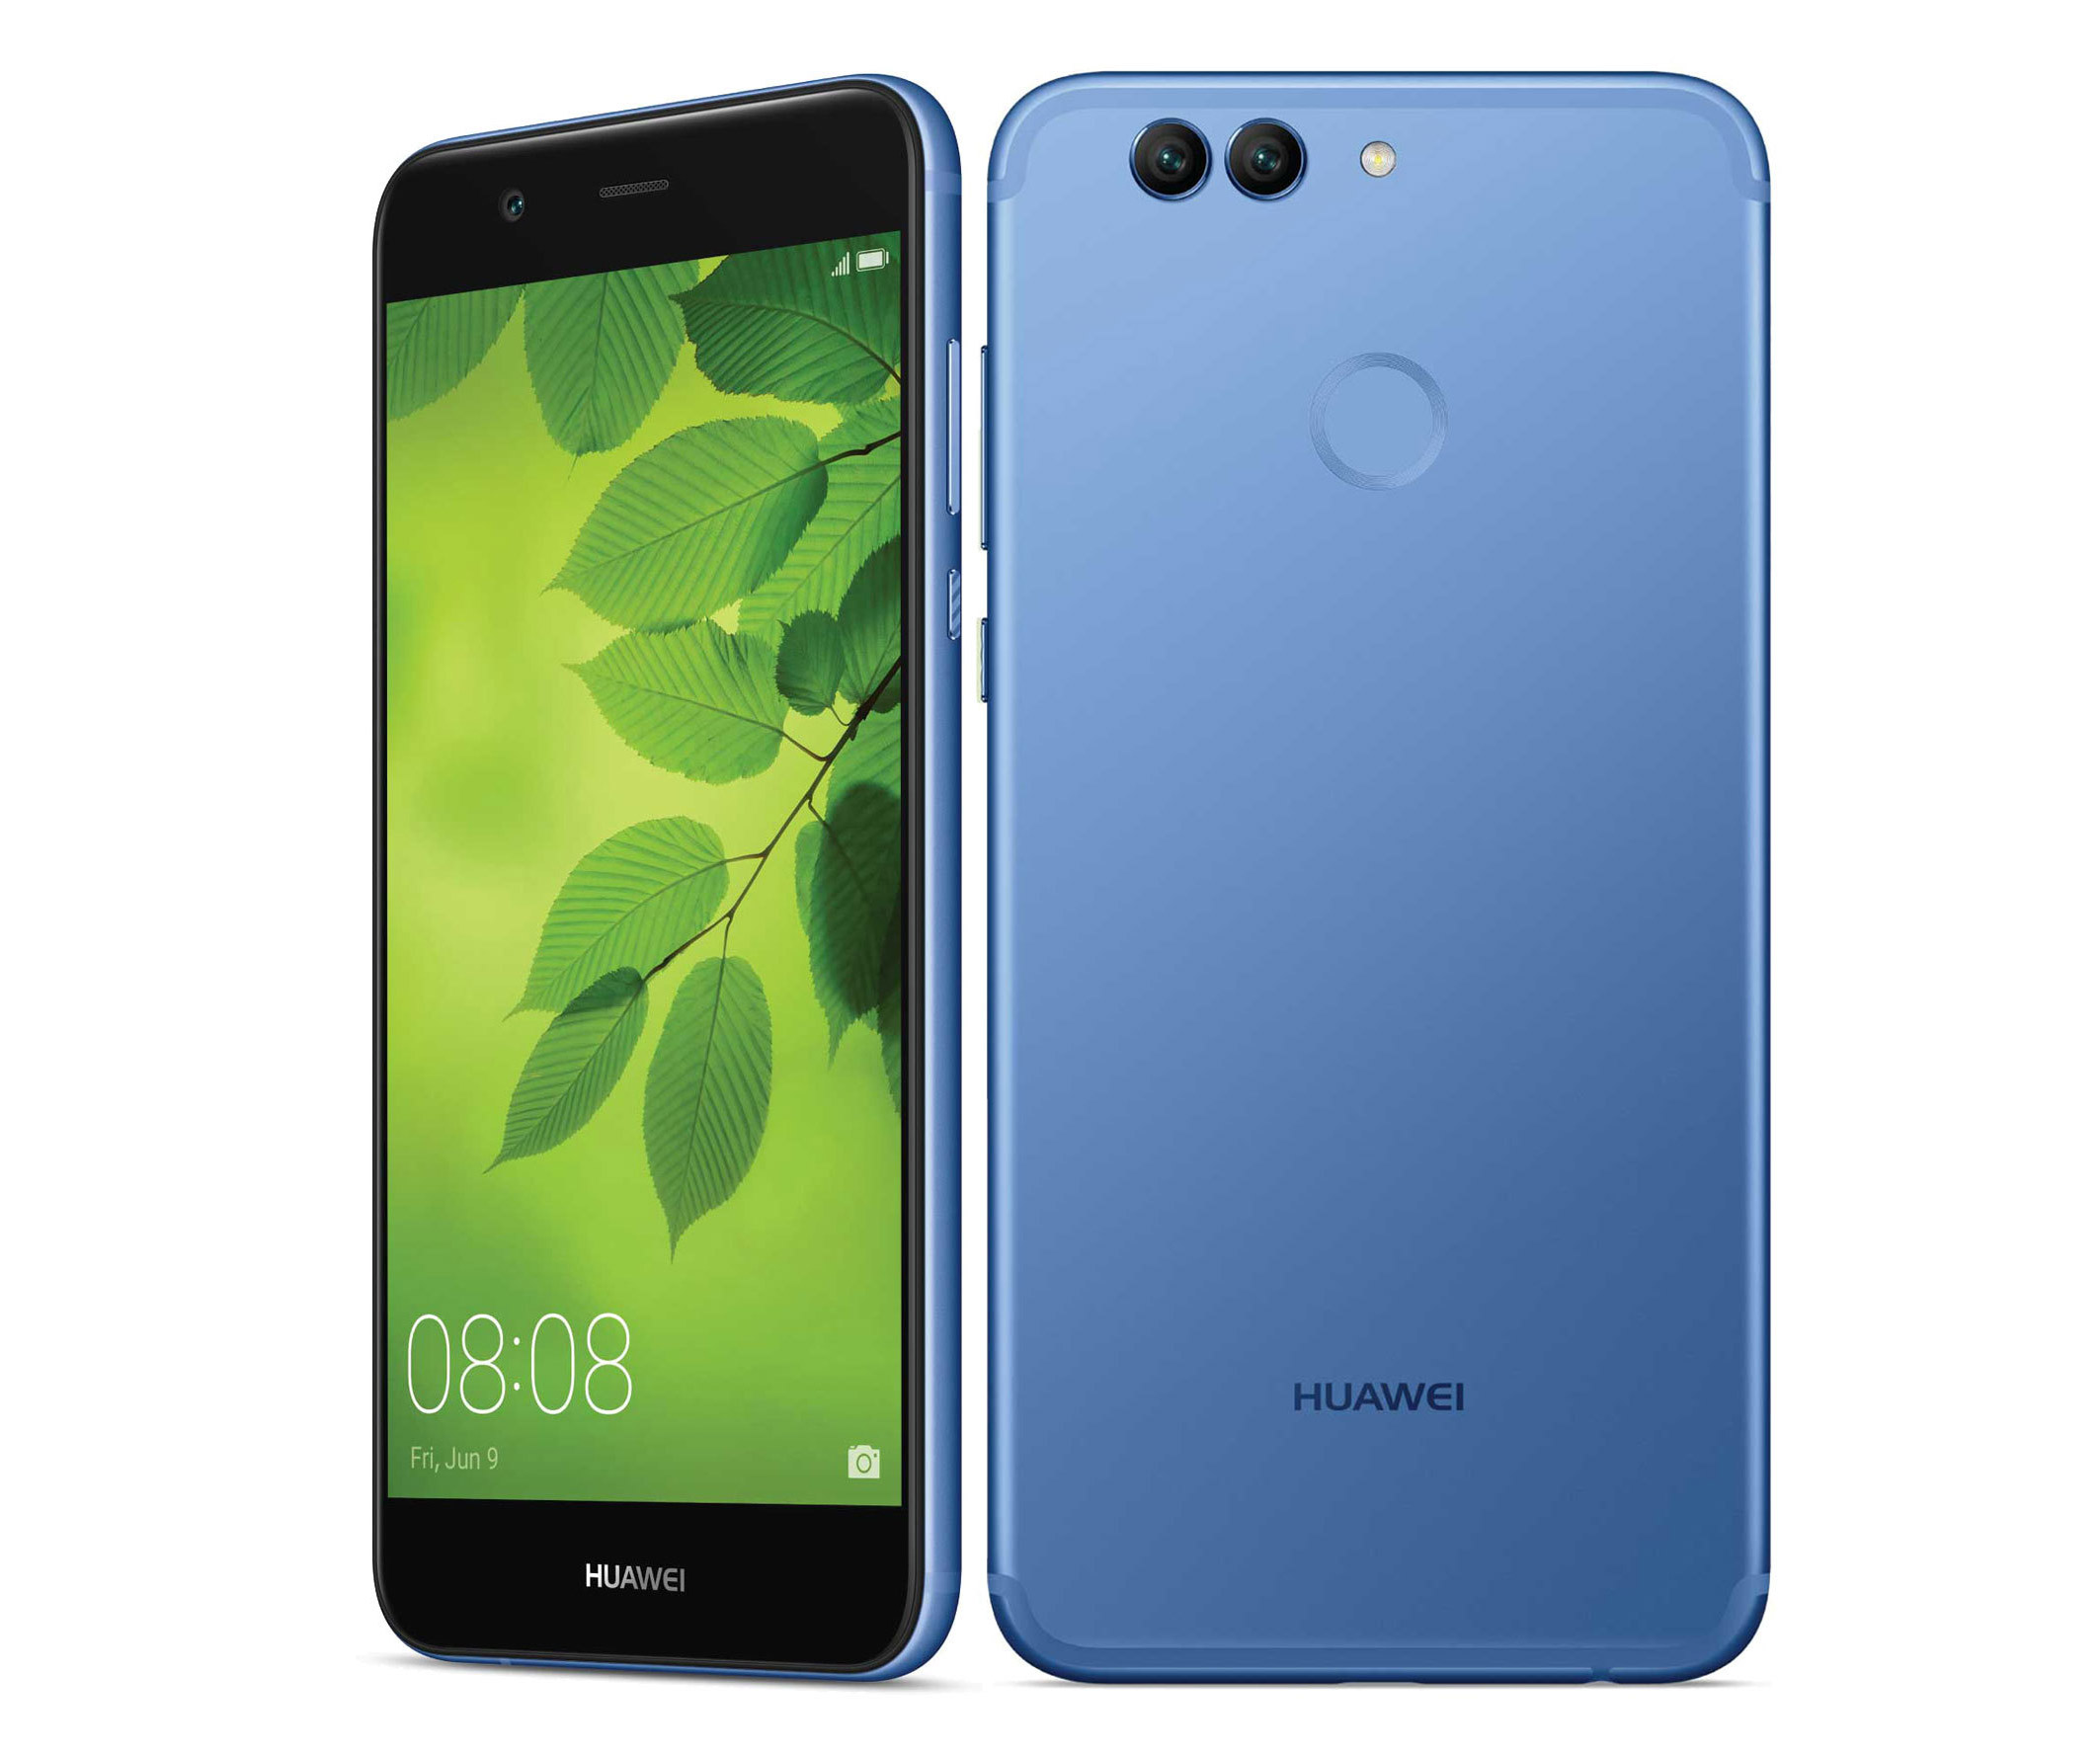 Huawei honor nova 10. Huawei Nova 2 Plus. Huawei Nova 2 Plus 64gb. Huawei Nova 2 pic-lx9. Huawei Nova 2 Blue (pic-lx9.